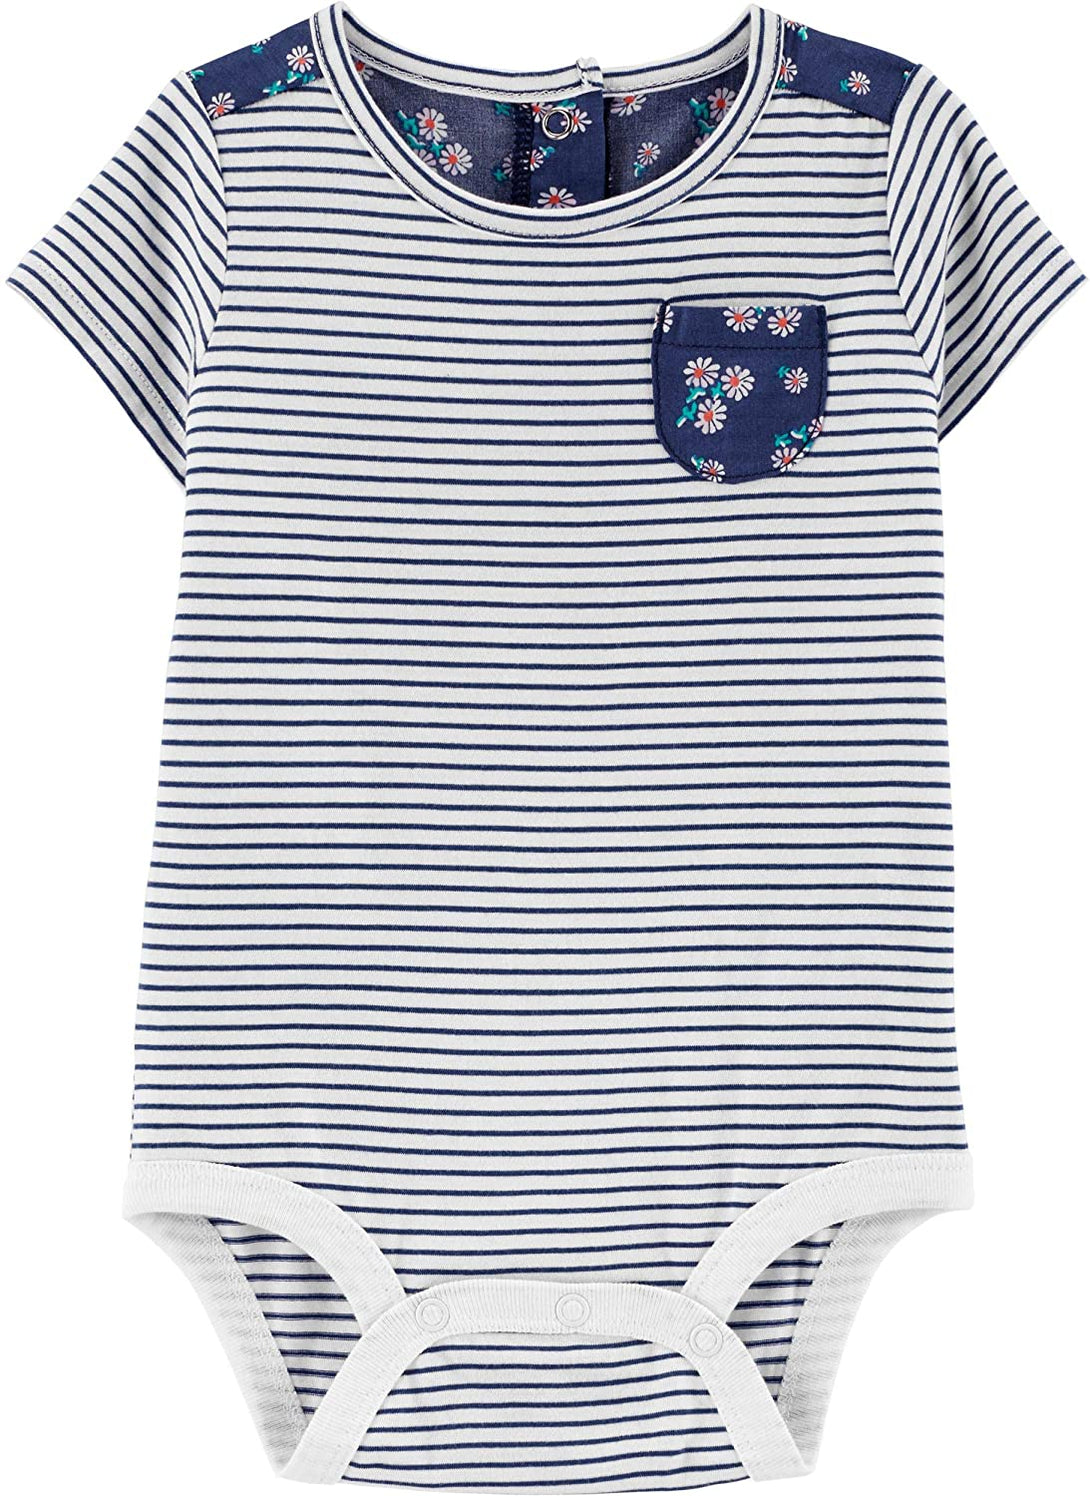 Oshkosh Striped Bodysuit For Baby, 24M - Hatolna Shop